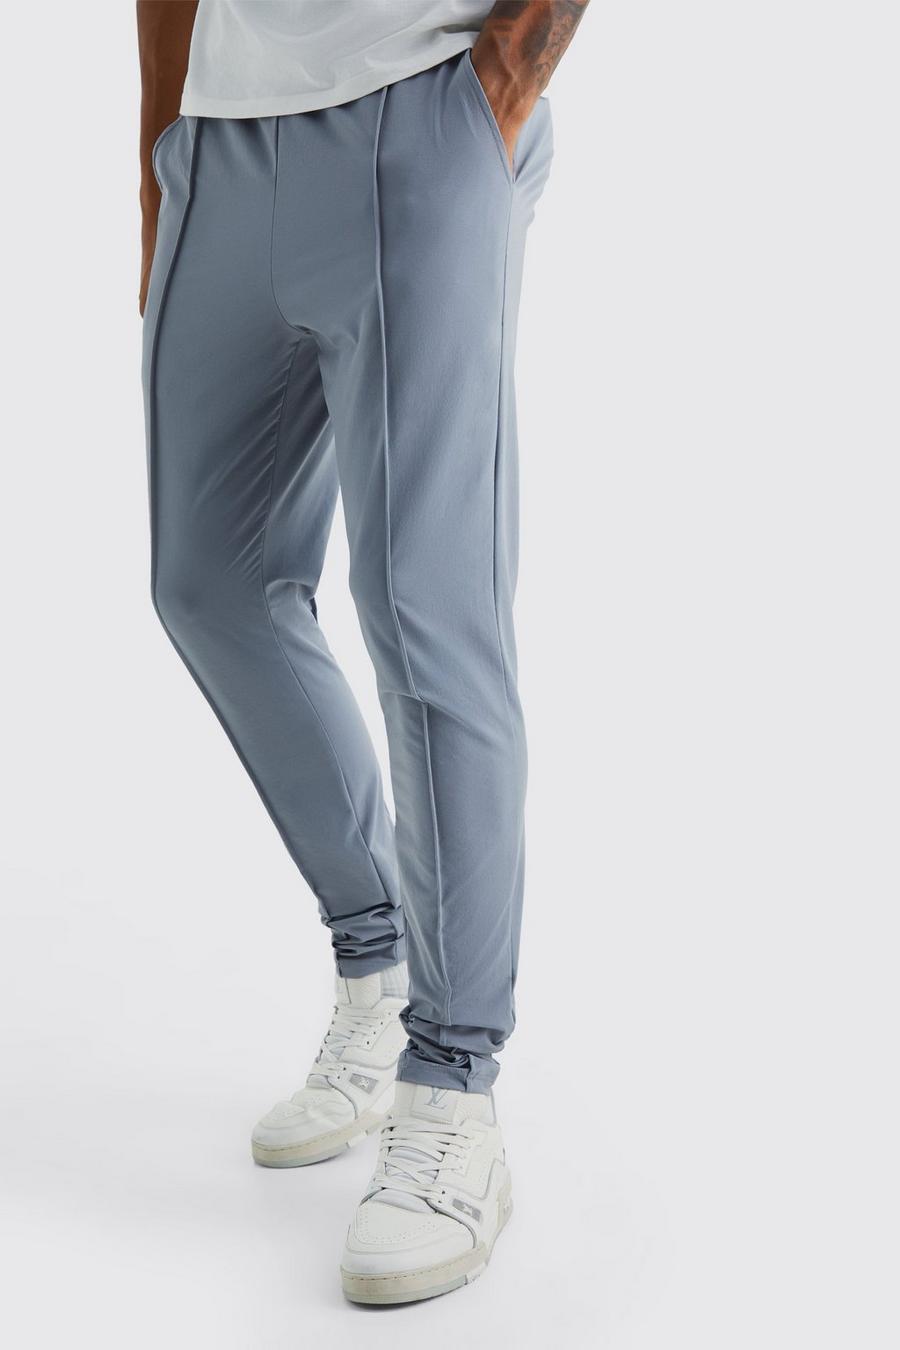 Pantalón Tall pitillo elástico ligero con alforza, Light grey